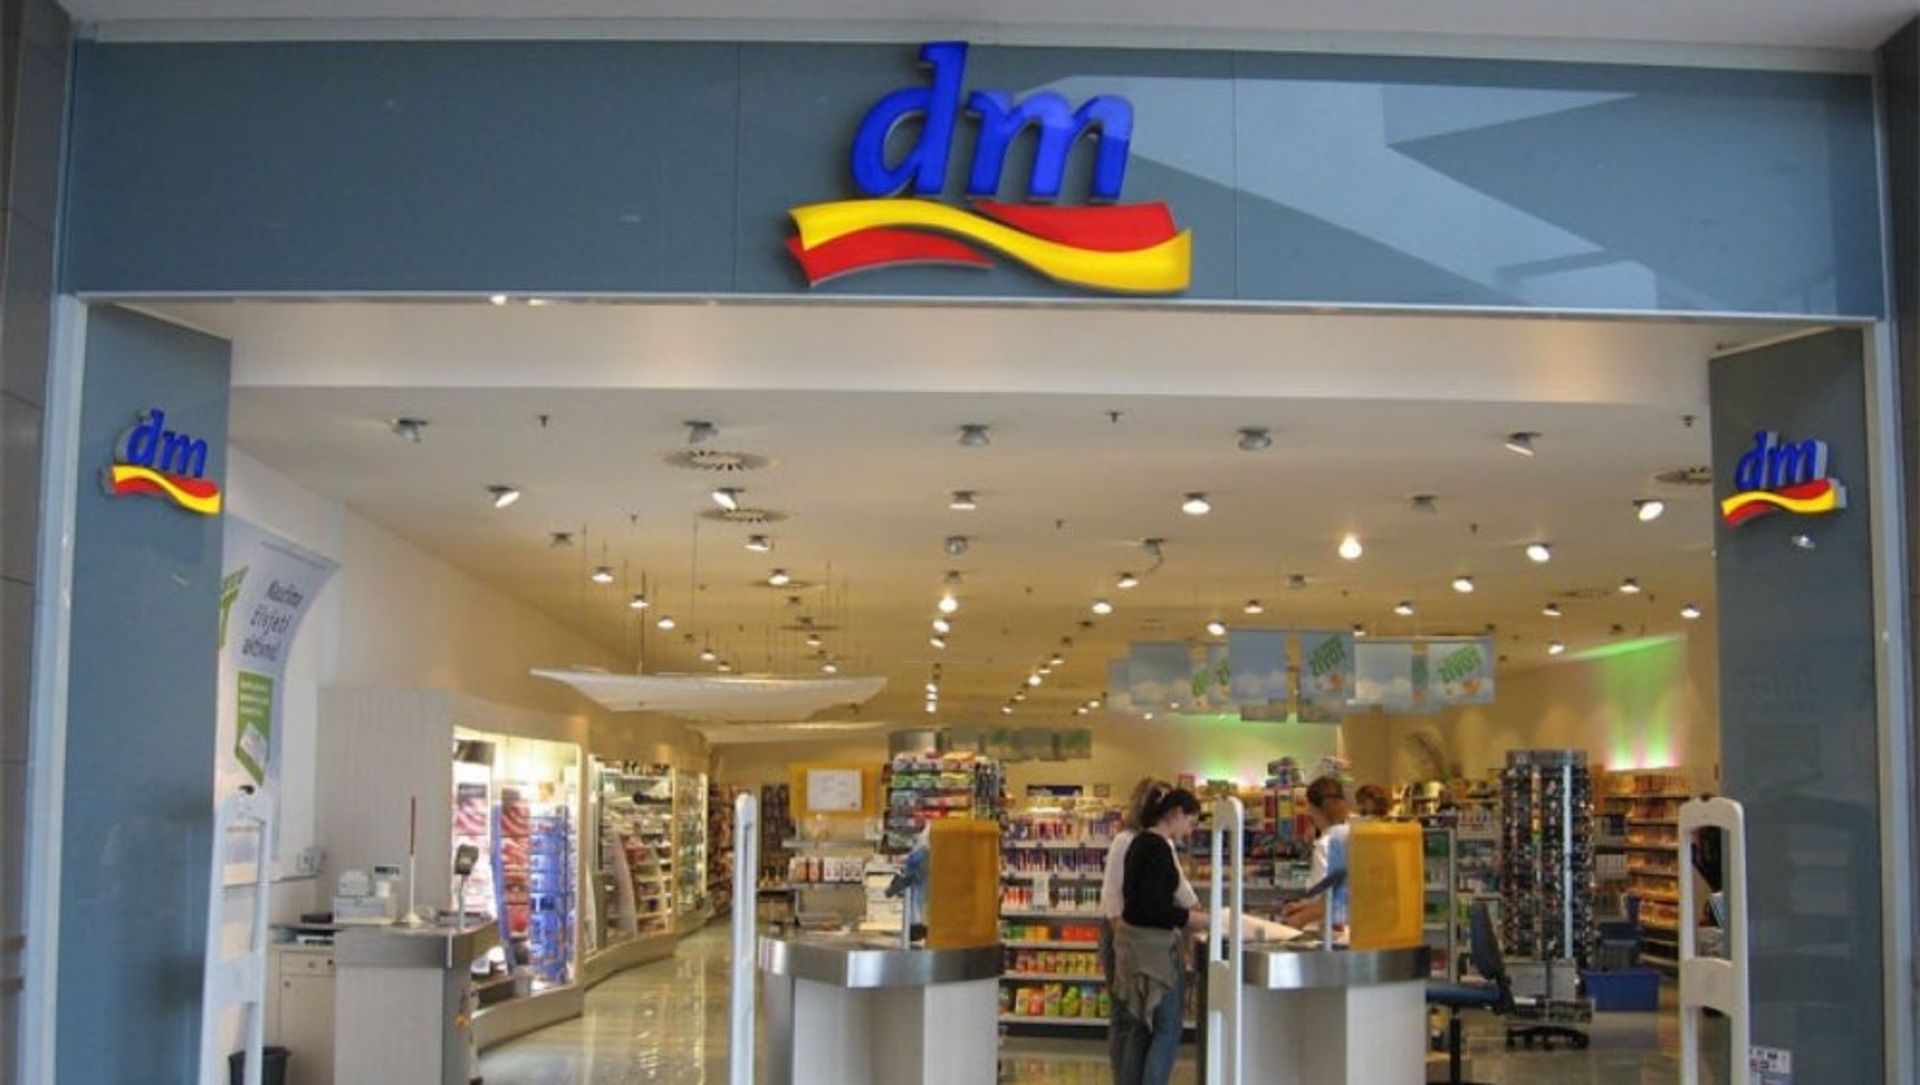 Wrocław: Znana jest już data otwarcia pierwszego w Polsce sklepu niemieckiej sieci Dm-drogerie